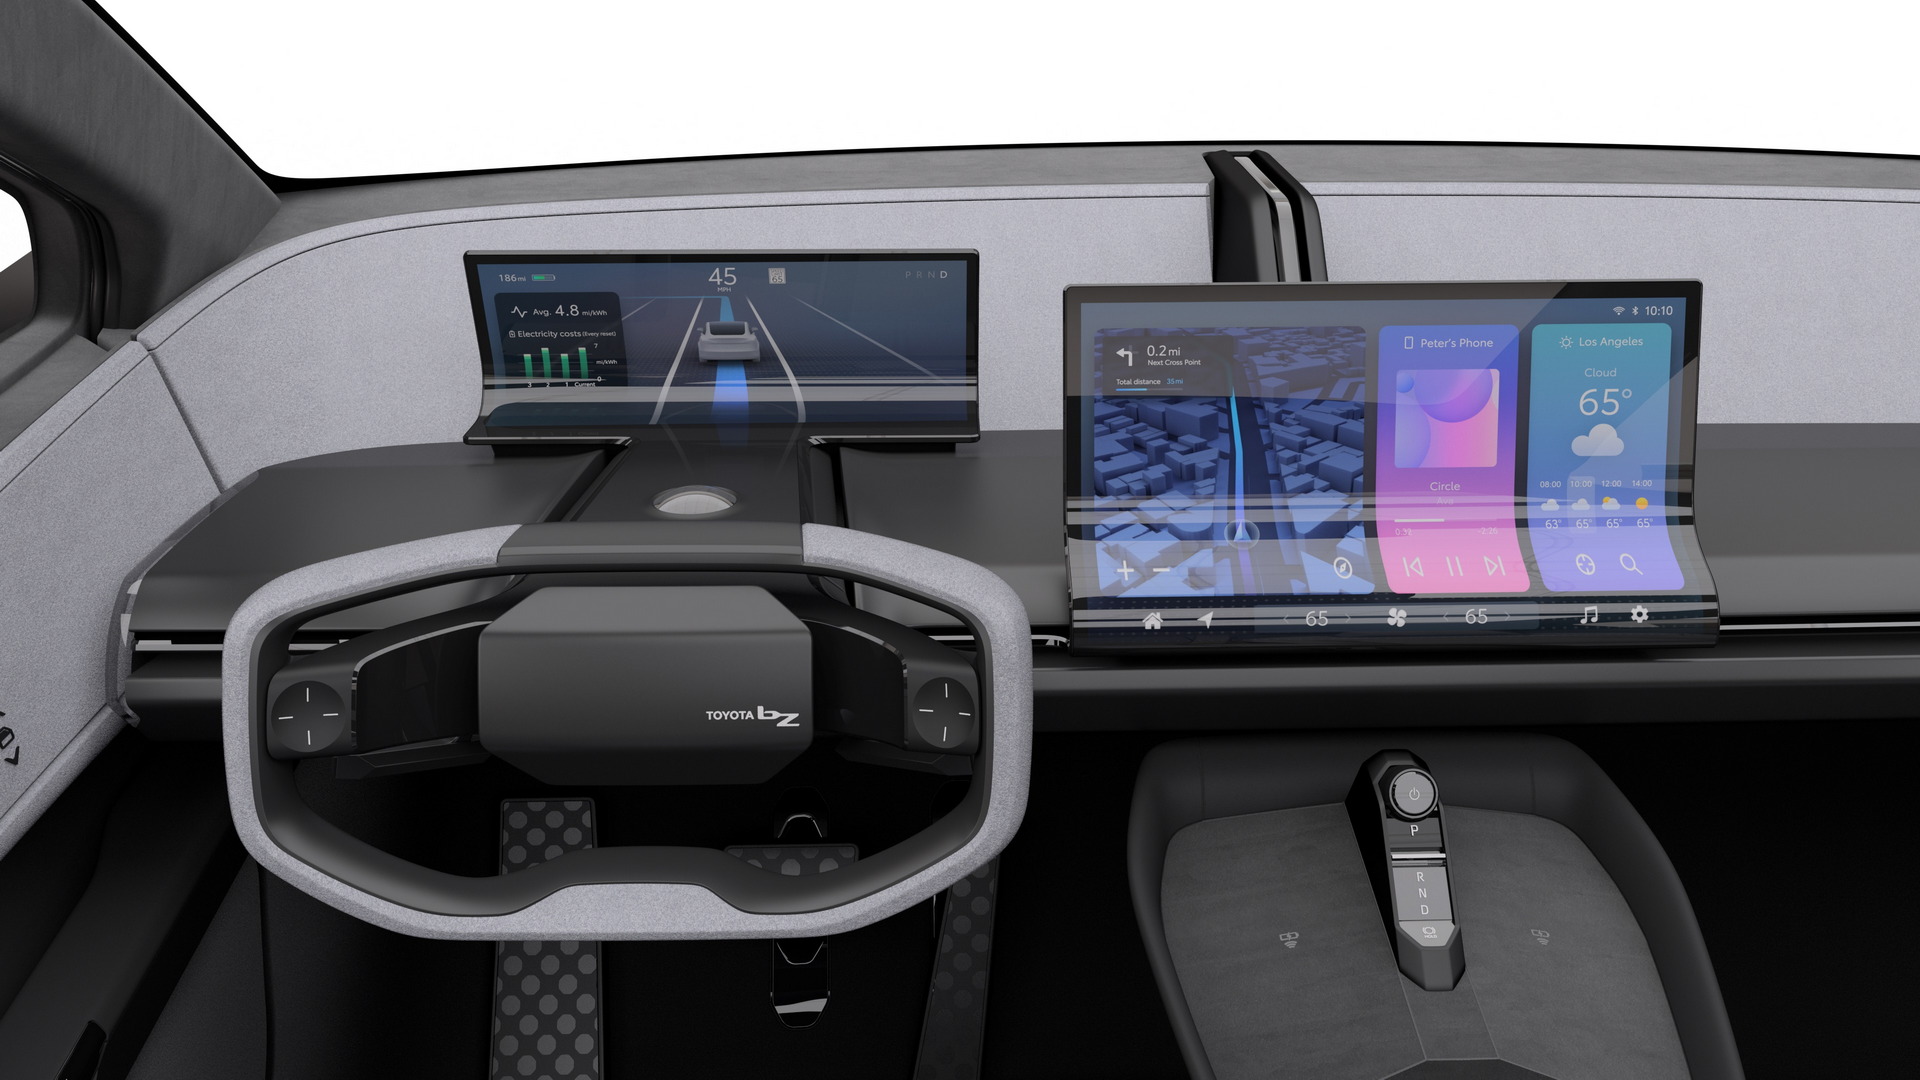 تدشين تويوتا bZ كومباكت SUV الكهربائية الجديدة كلياً بتصميم انسيابي وداخلية عصرية 25